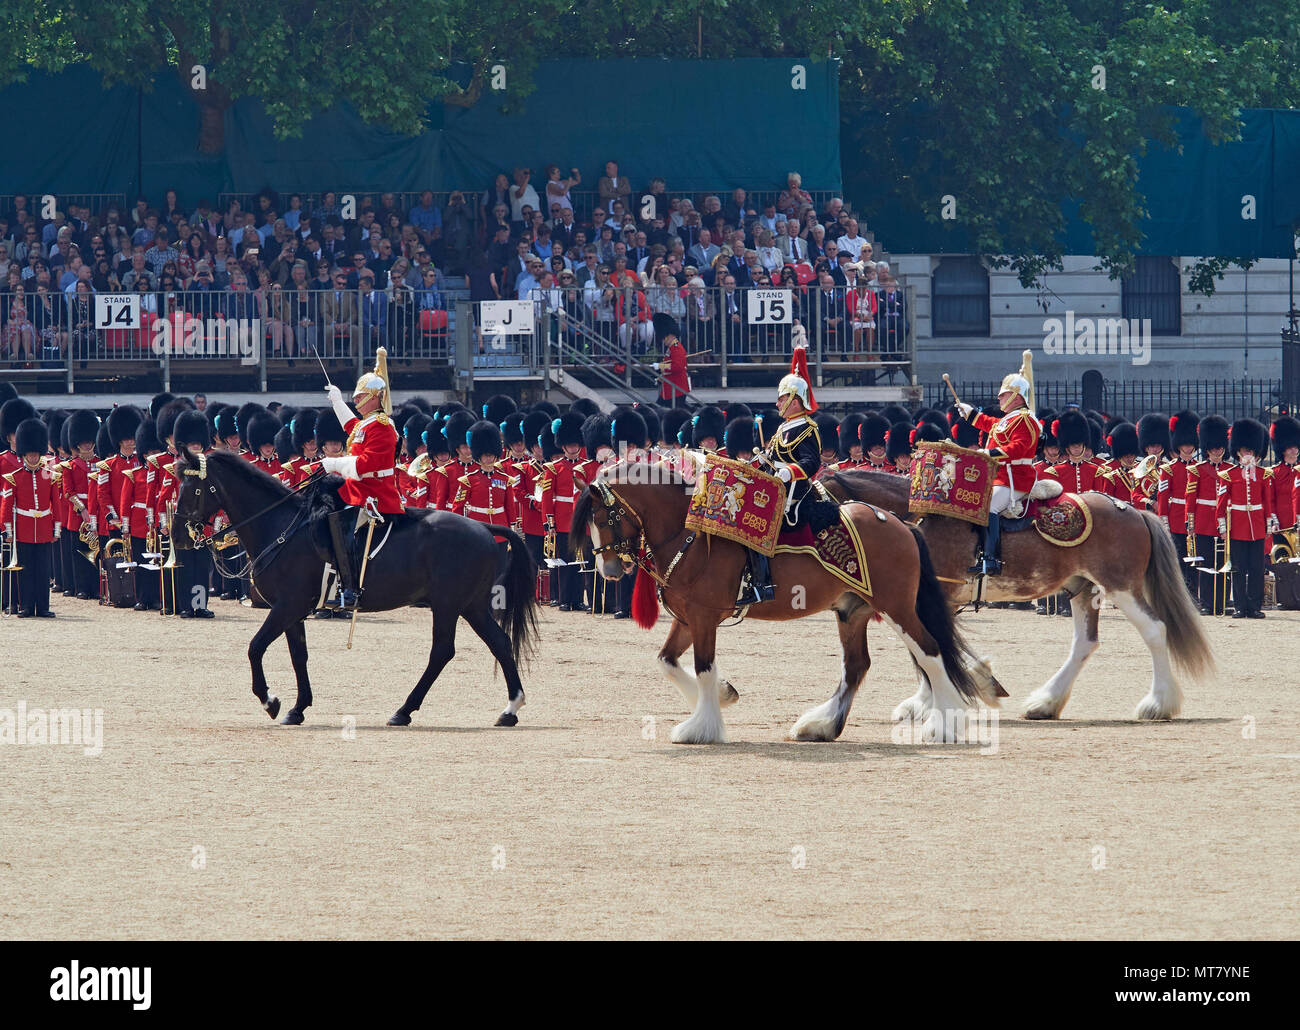 London Die wichtigsten Generäle in Horse Guards Parade eine Praxis für die Farbe der Queens Geburtstag Parade 2018 Stockfoto